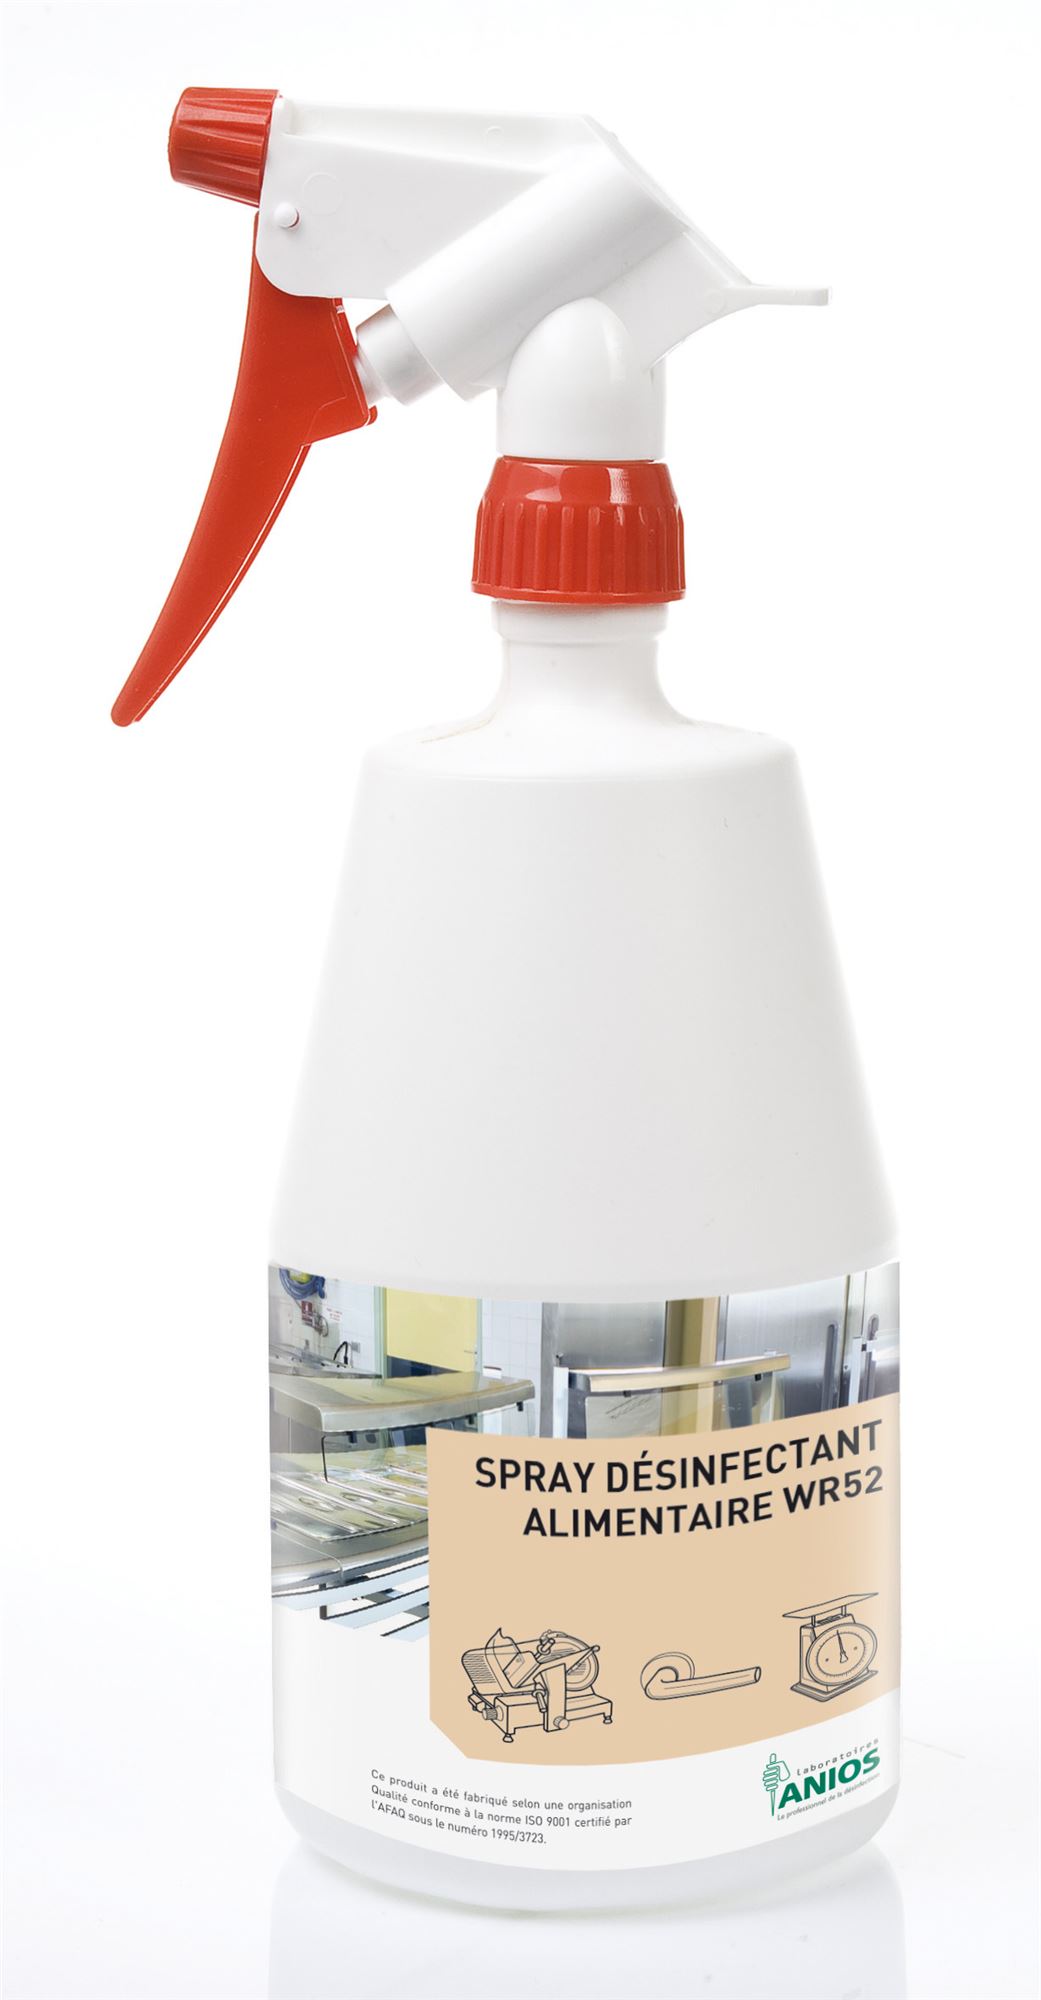 Anios spray food disinfectant